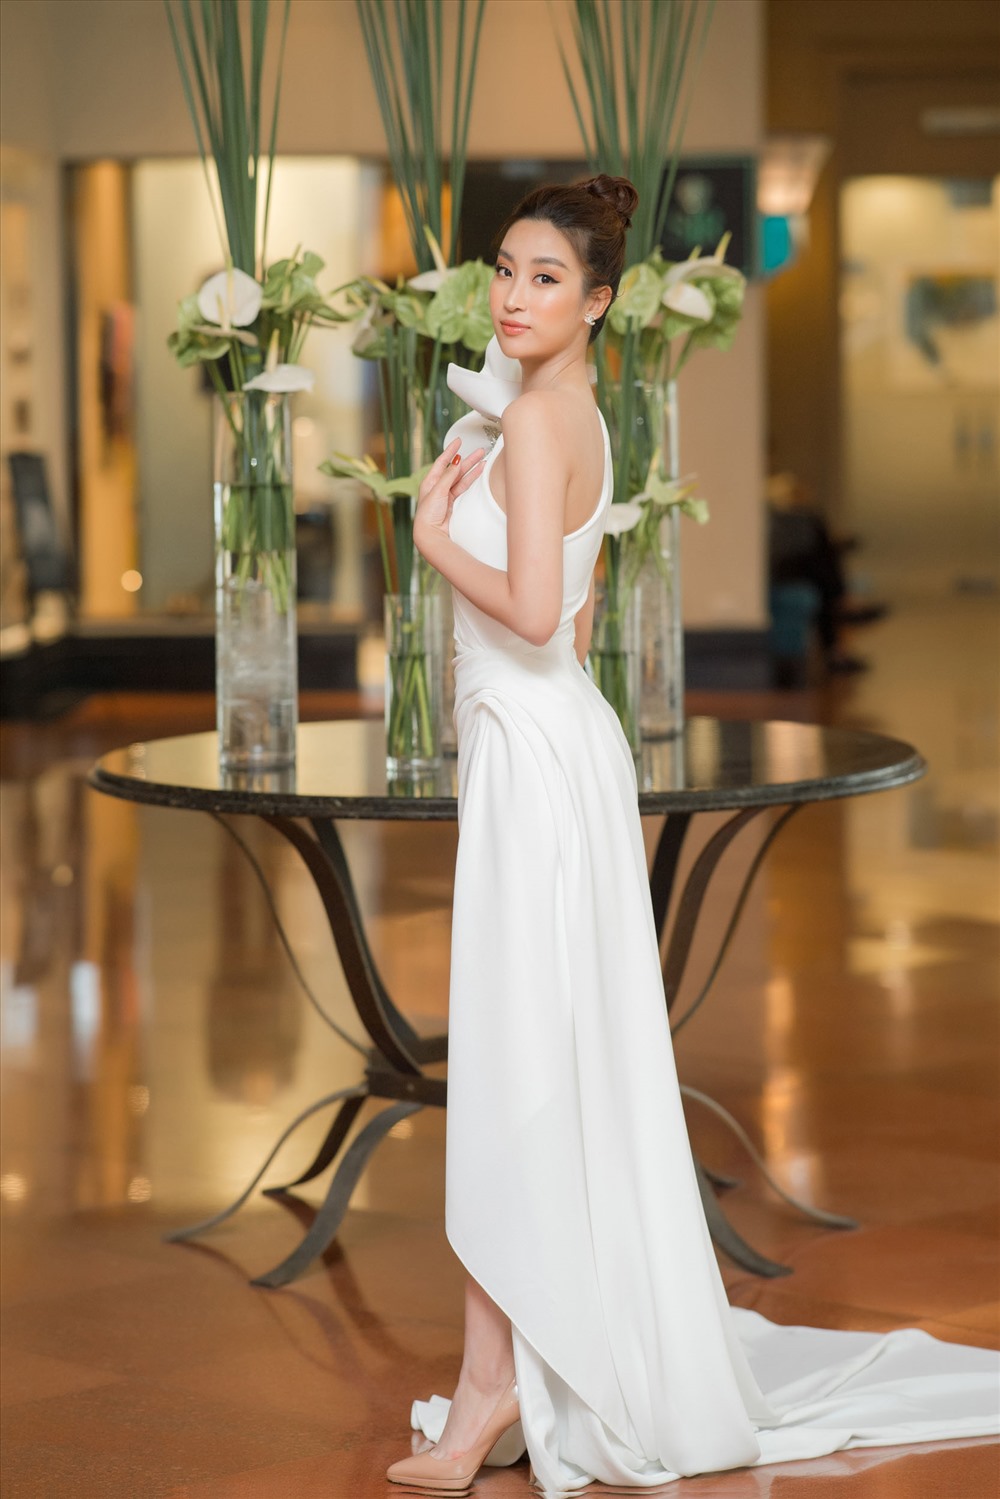 Xuất hiện tại sự kiện, Đỗ Mỹ Linh đã lựa chọn khoác lên mình chiếc đầm trắng với thiết kế tinh tế khoe vai trần gợi cảm và xẻ đùi đầy khéo léo. Ảnh: Linh Lê Chí.